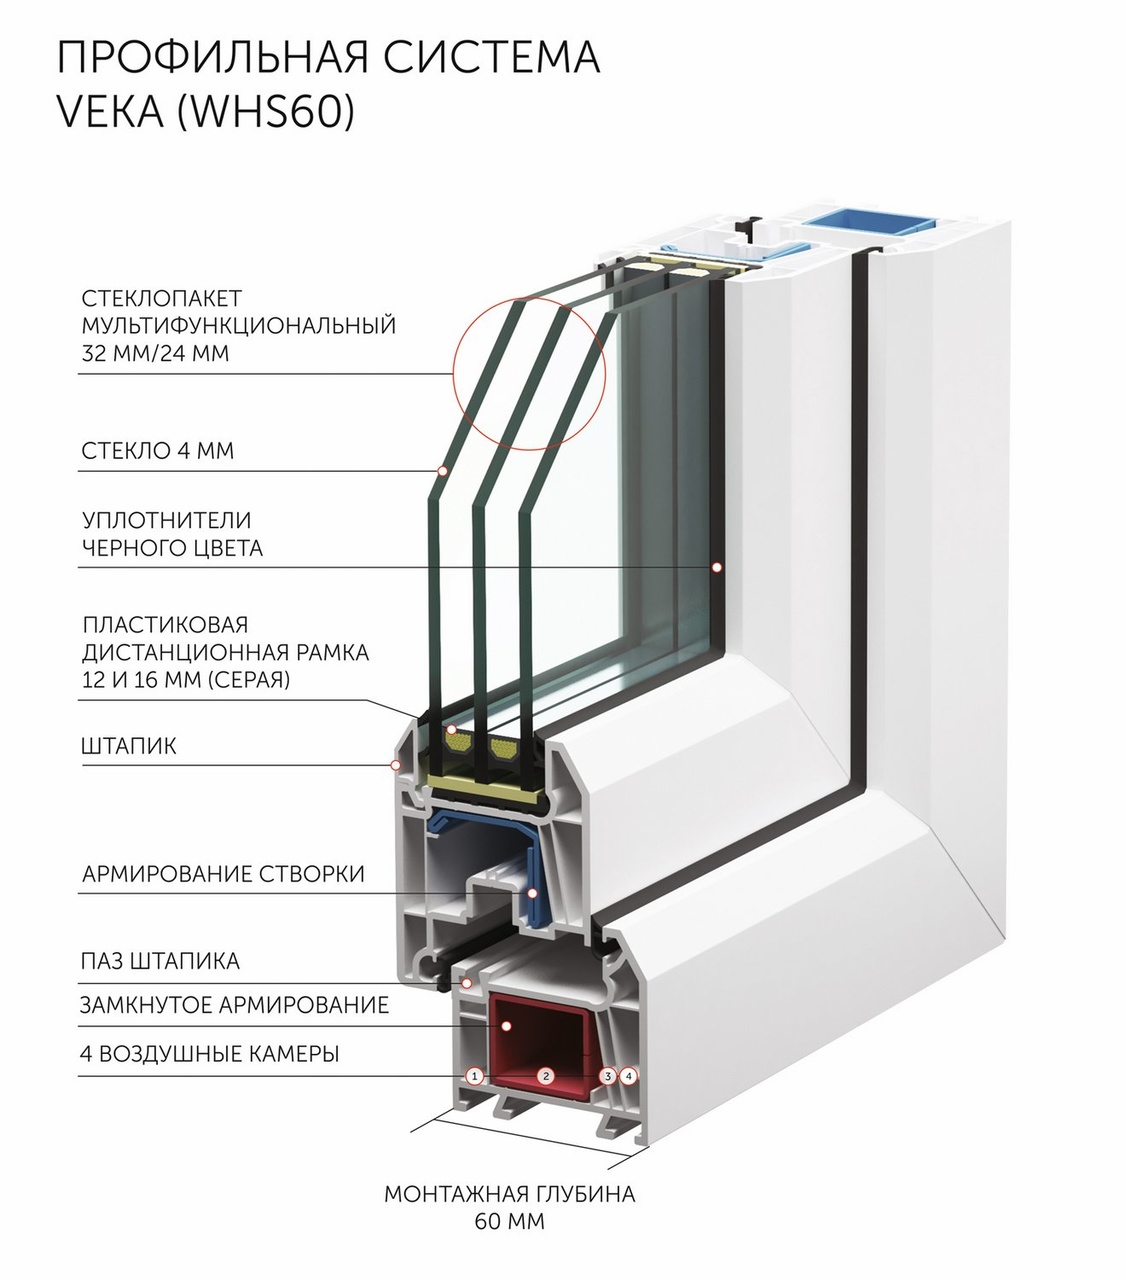 Профиль Veka WHS 60